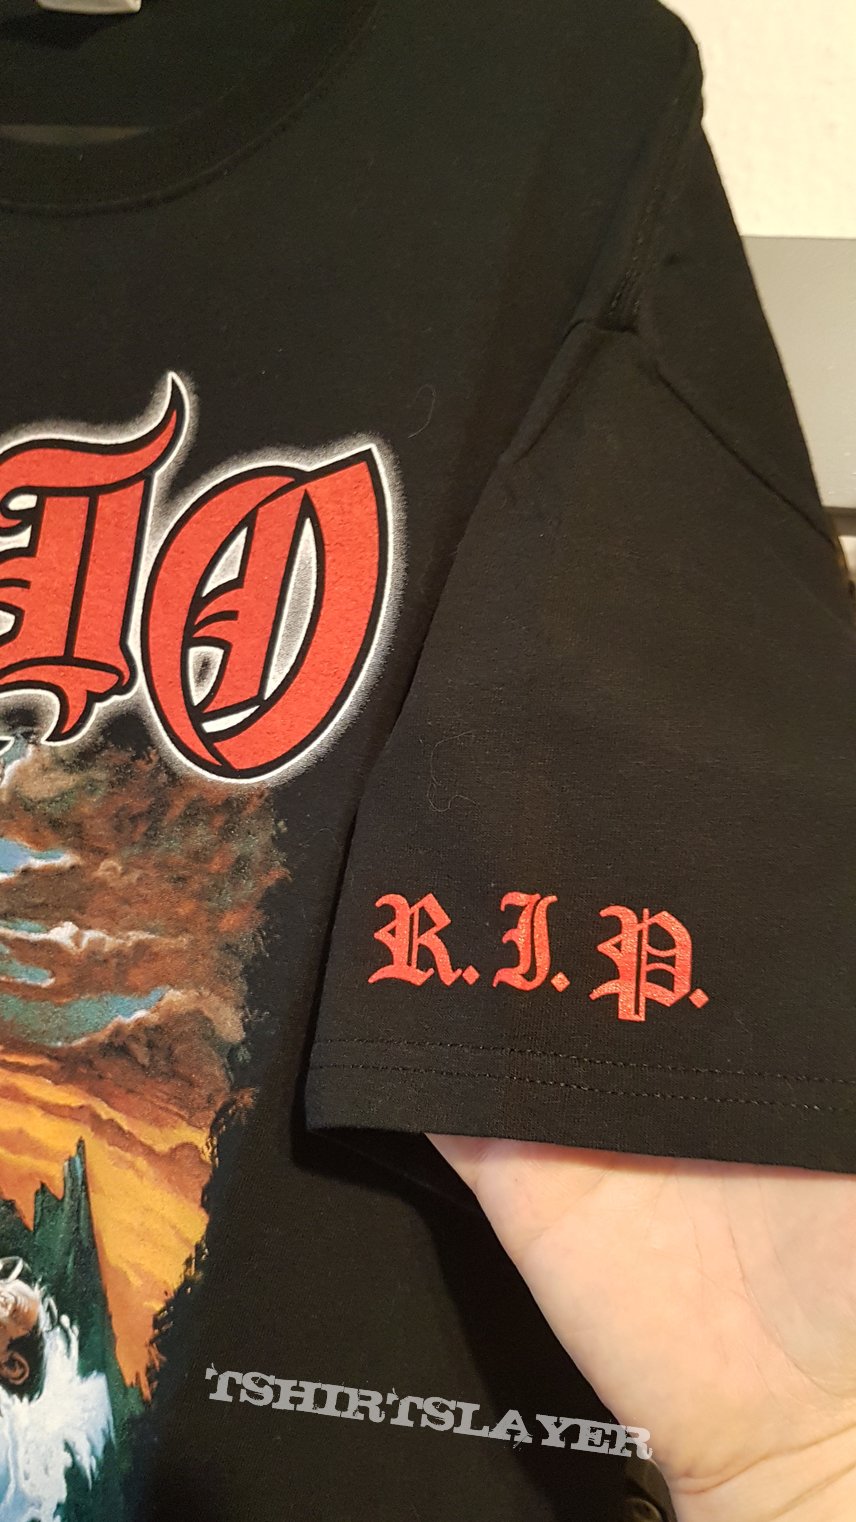 Dio Tribute TS